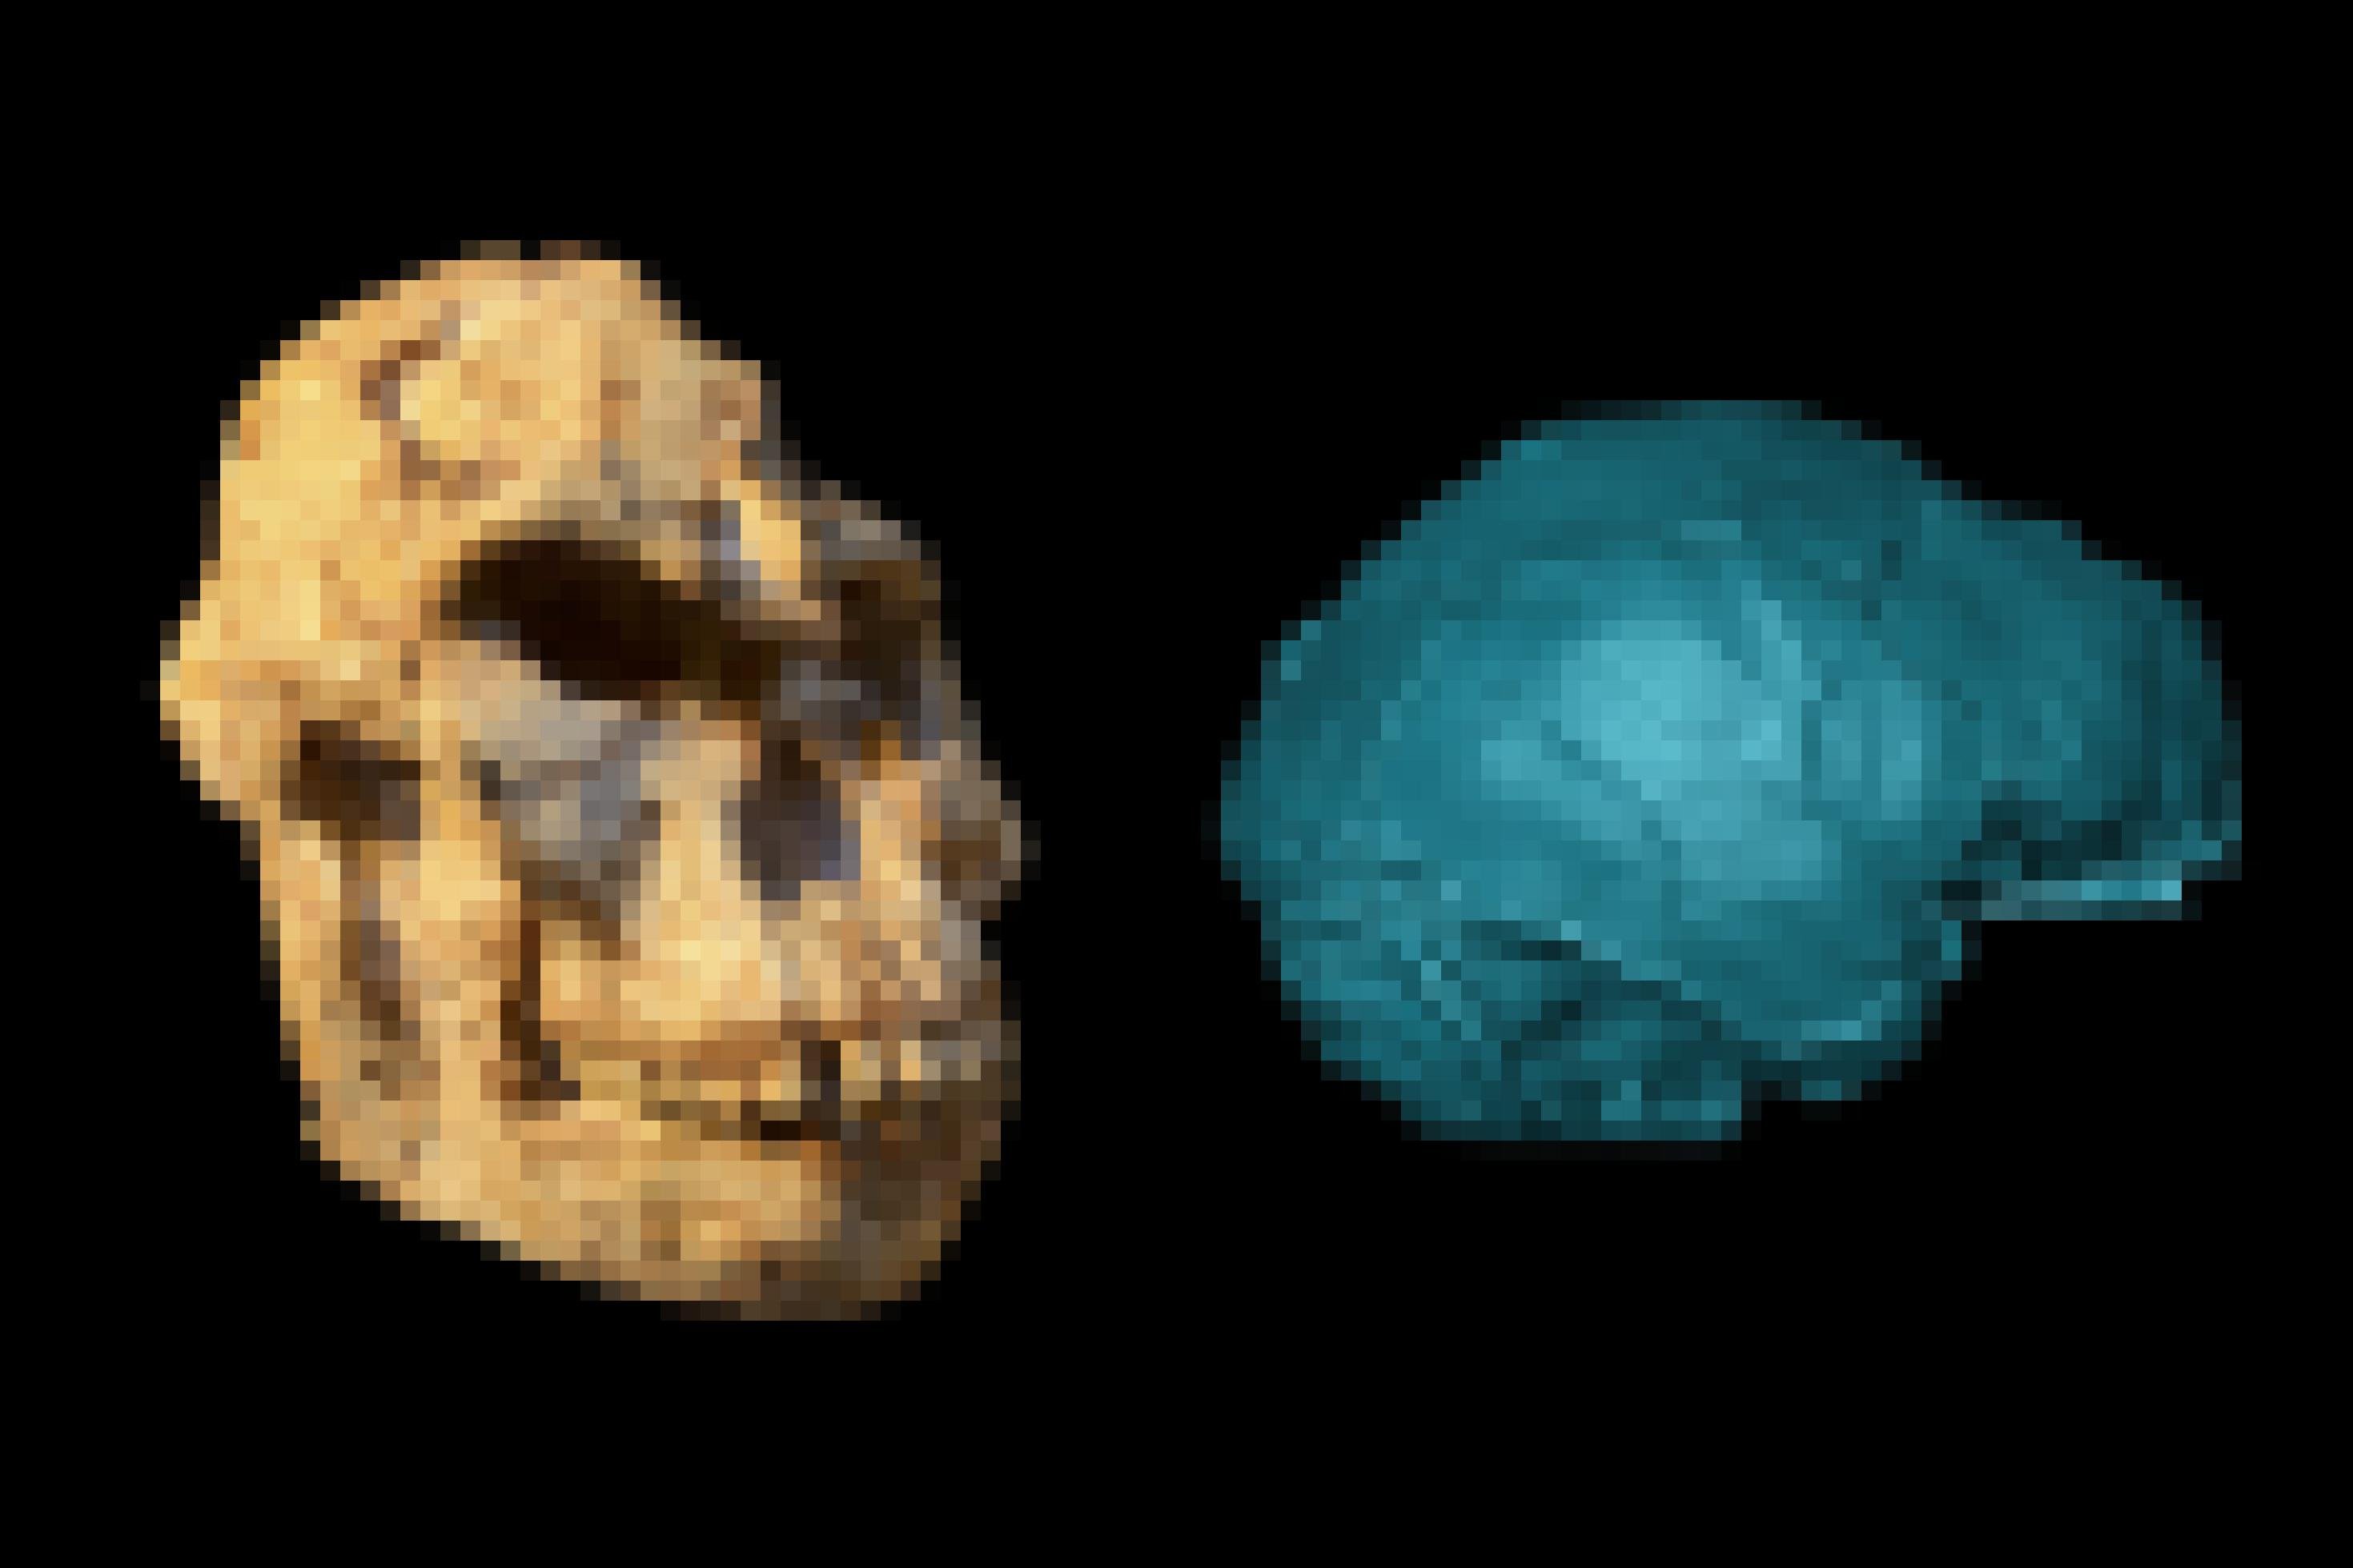 Links ist ein versteinerter, etwas verformter Schädel mit großen, vorstehenden Kieferpartien, Knochenwülsten über den Augen zu sehen, rechts die blau eingefärbte Darstellung eines Gehirnabgusses.